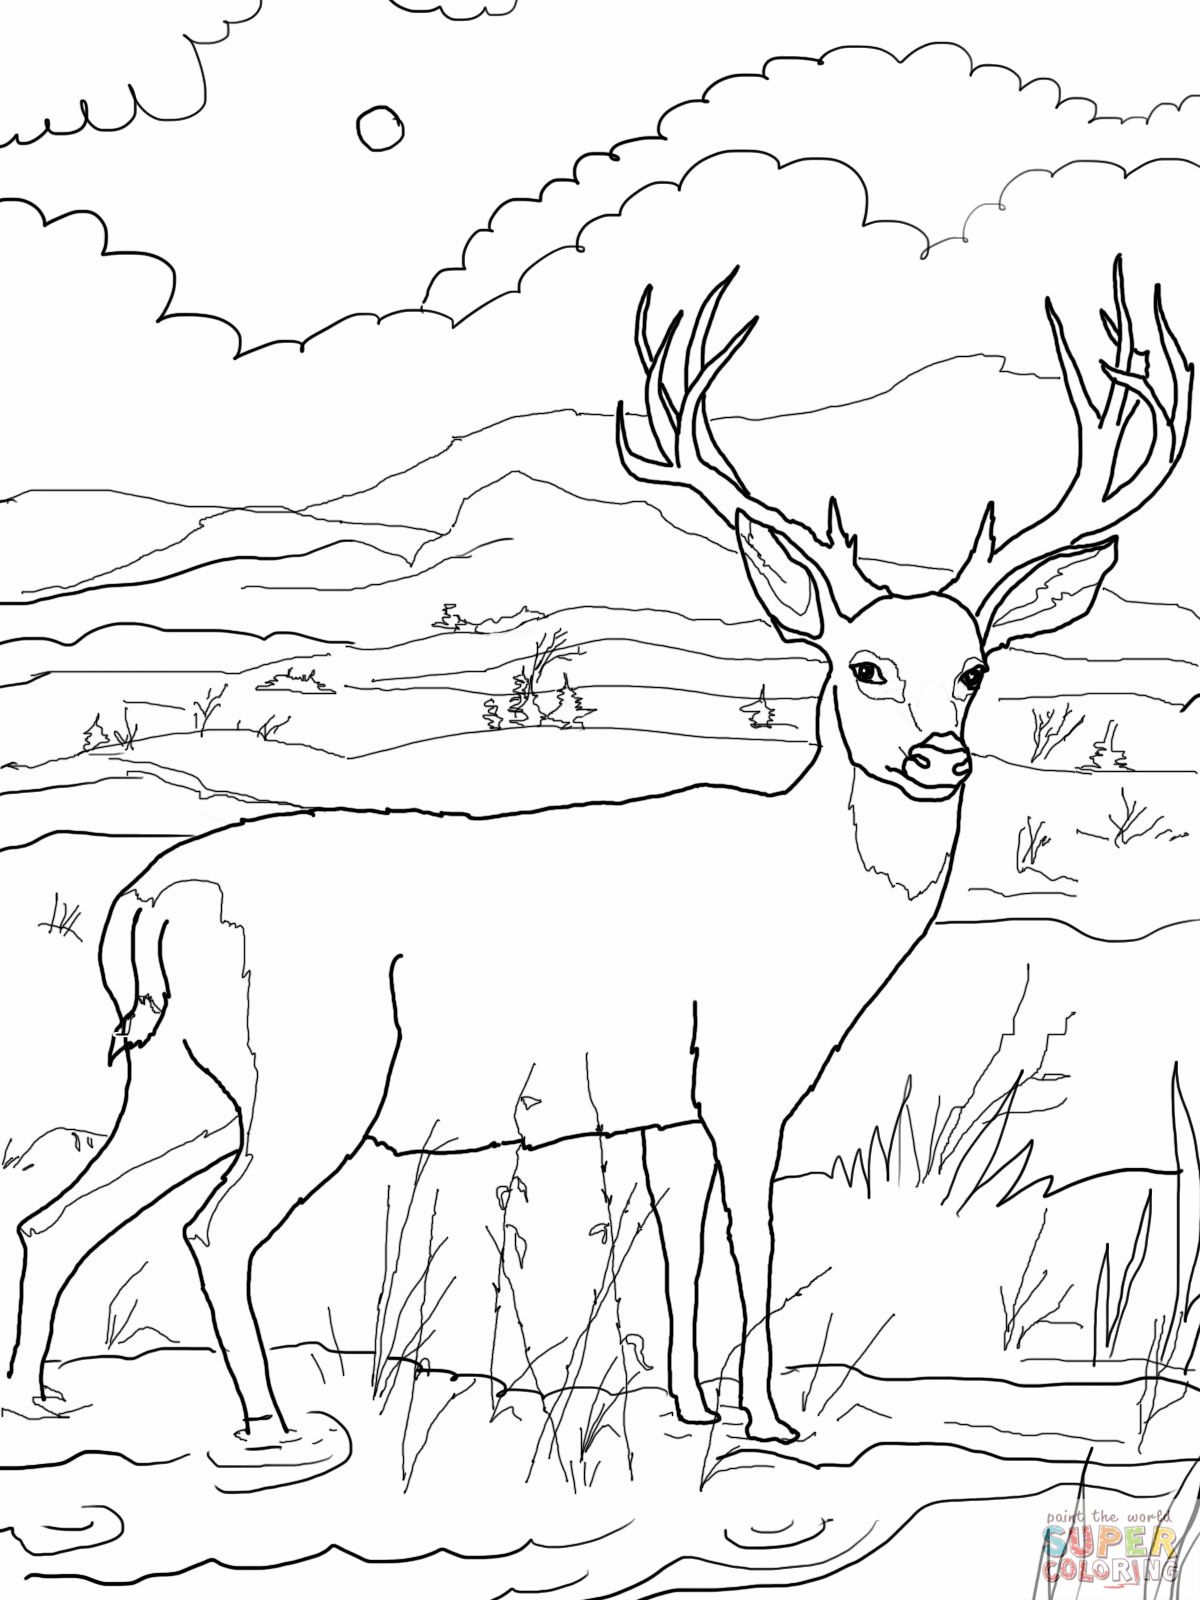 deer-coloring-page-blacktail-mule-deer-coloring-online-super-coloring-home